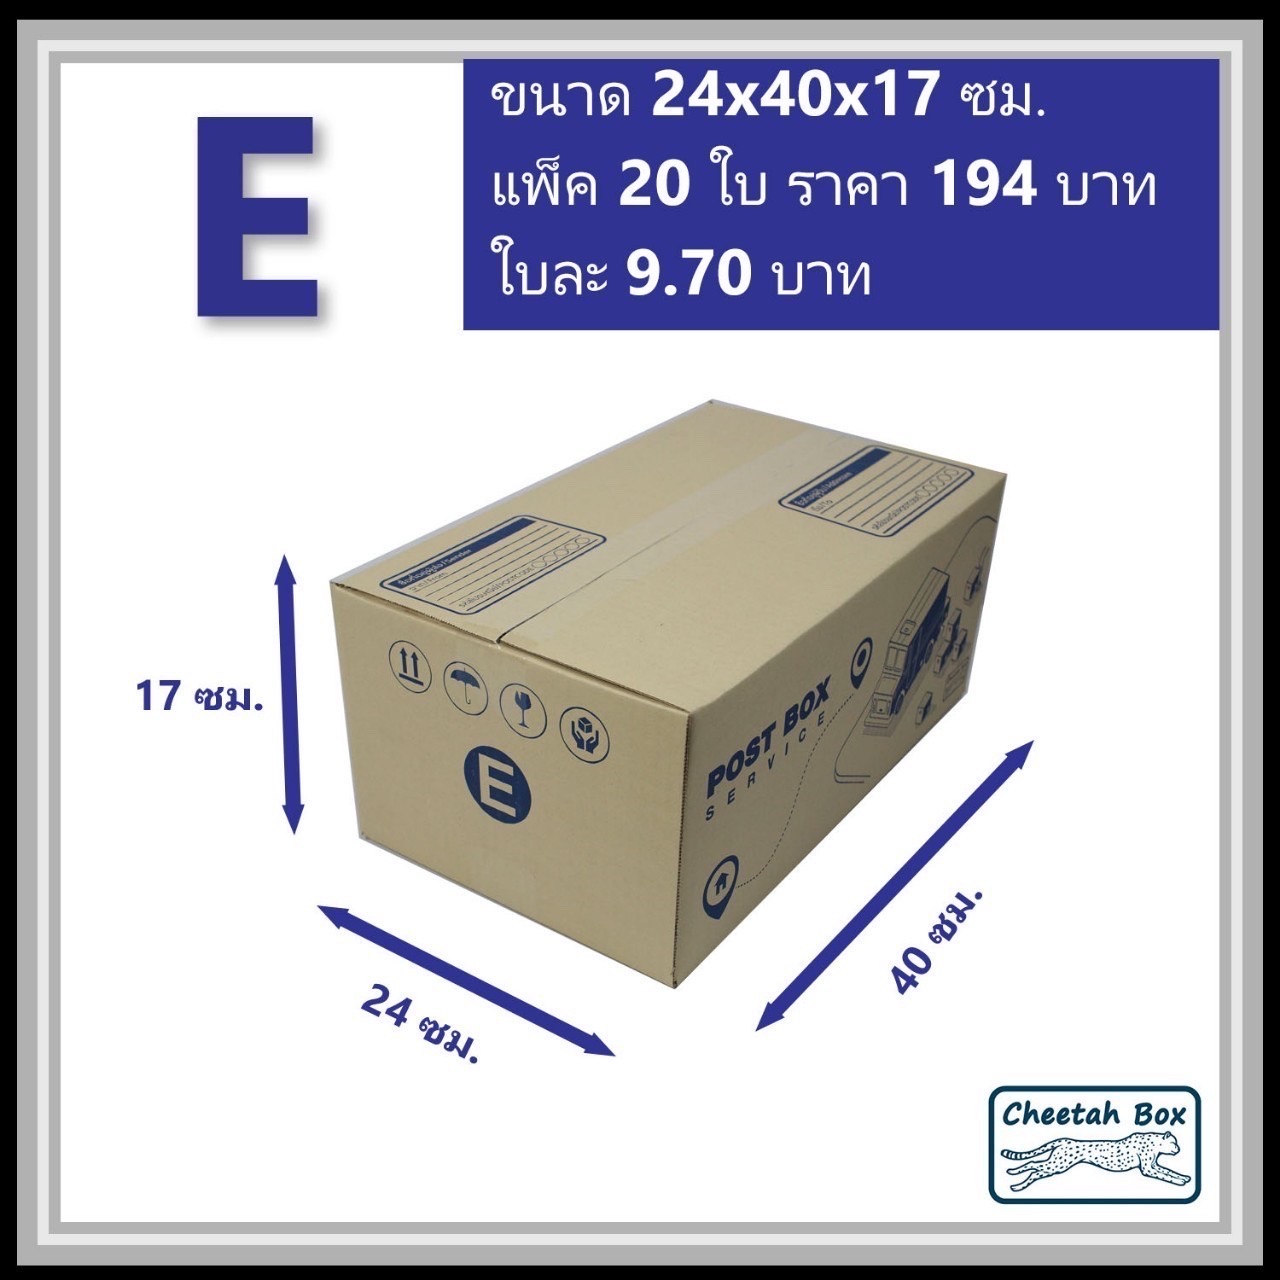 กล่องไปรษณีย์ E (จ) (Cheetah Box ขนาด 24*40*17 CM)